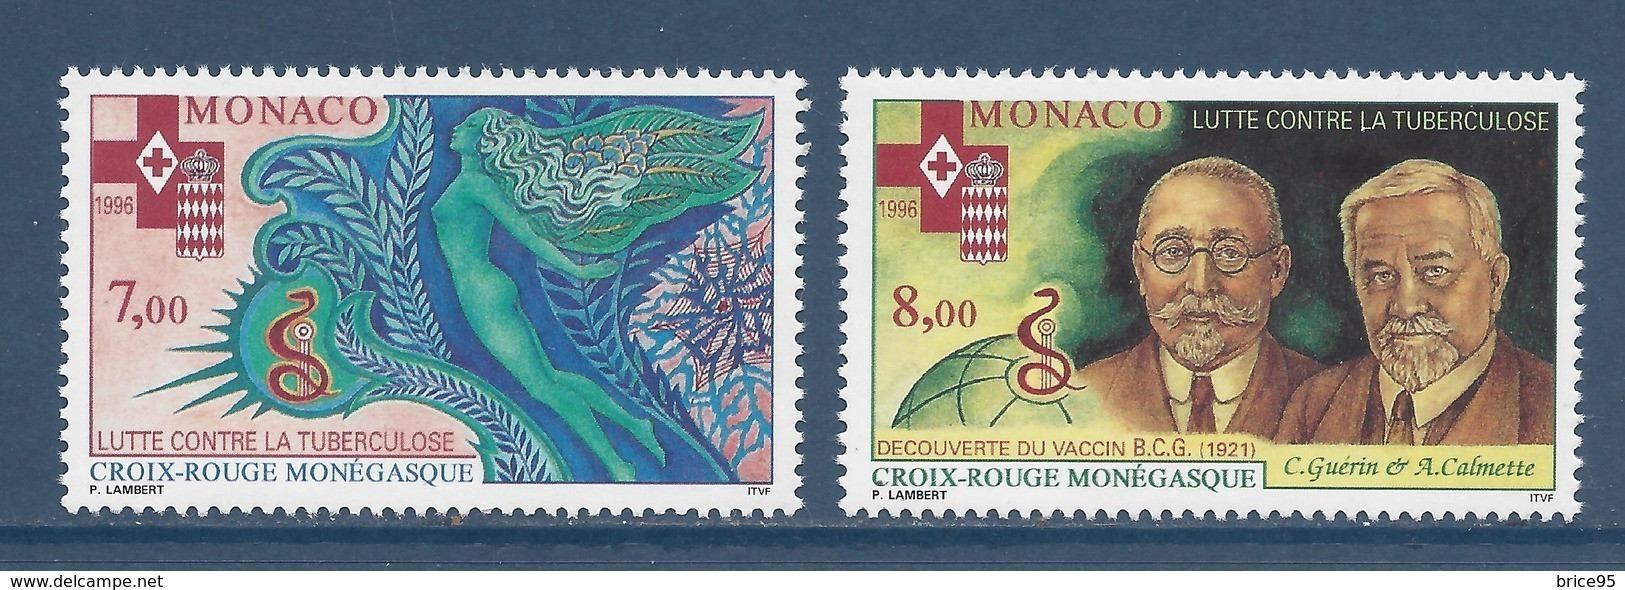 Monaco - YT N° 2063 Et 2064 ** - Neuf Sans Charnière - 1996 - Ungebraucht